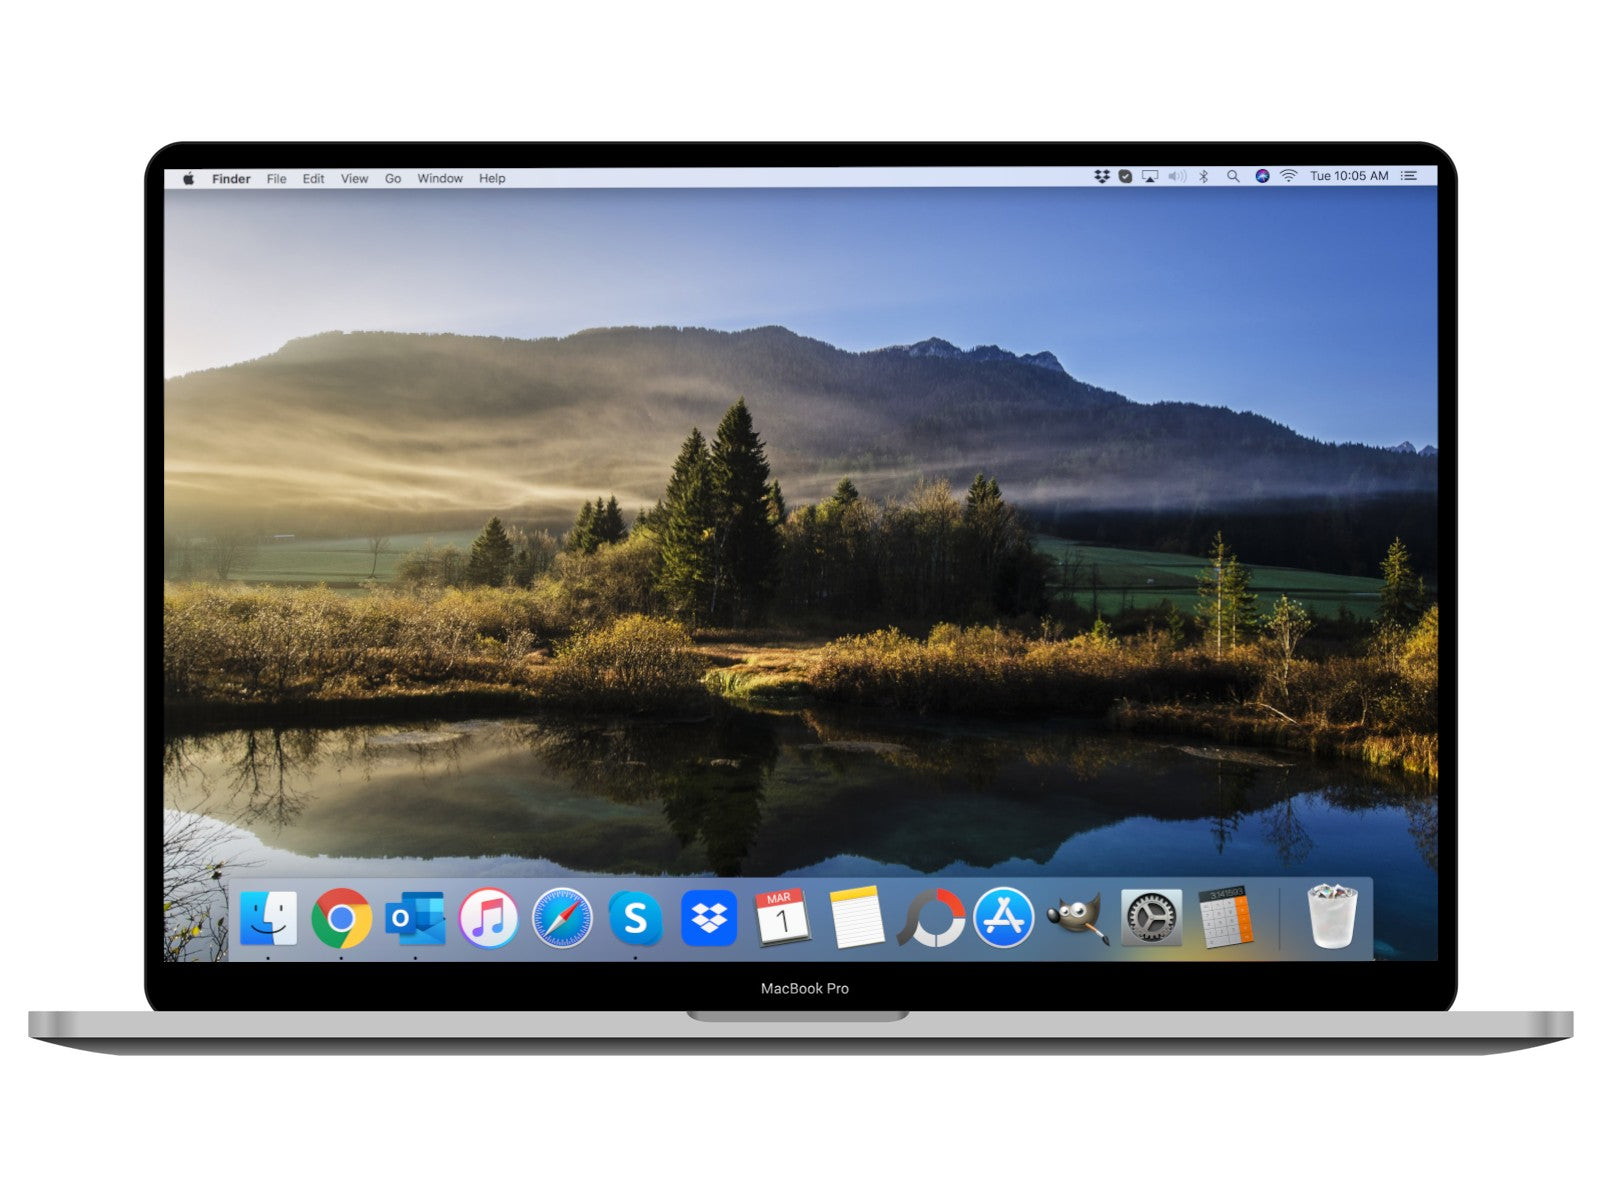 MacBook Pro 2019 16-inch Space Grey 2.6 GHz i7, 16GB RAM, 512GB